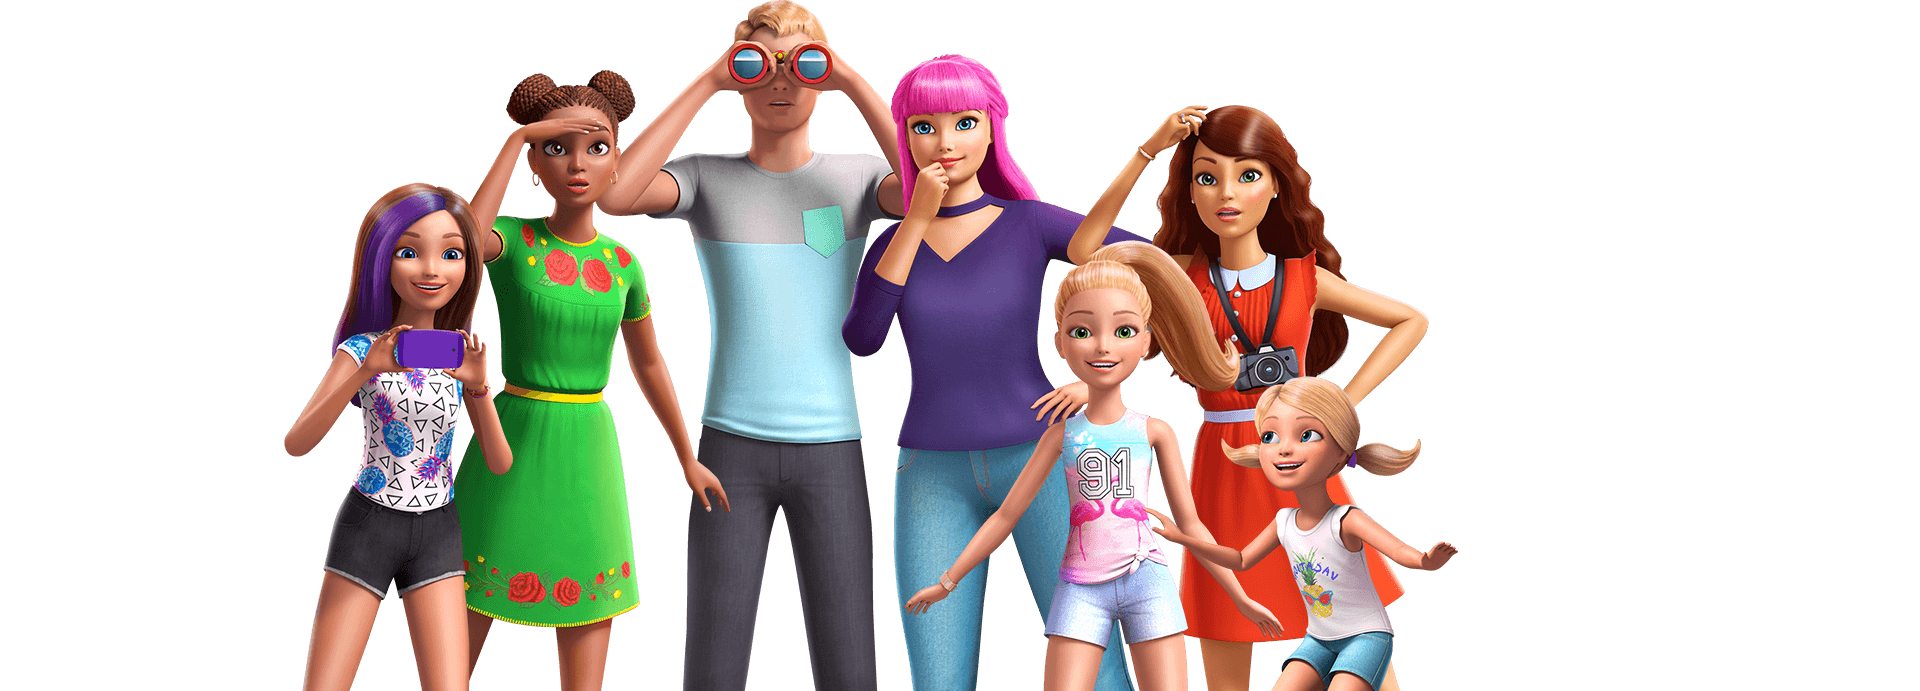 Telemacos proposición Decepcionado Jugar juegos de Barbie Dreamhouse Adventures | Juegos de Barbie Dreamhouse  Adventures gratis | Cartoon Network